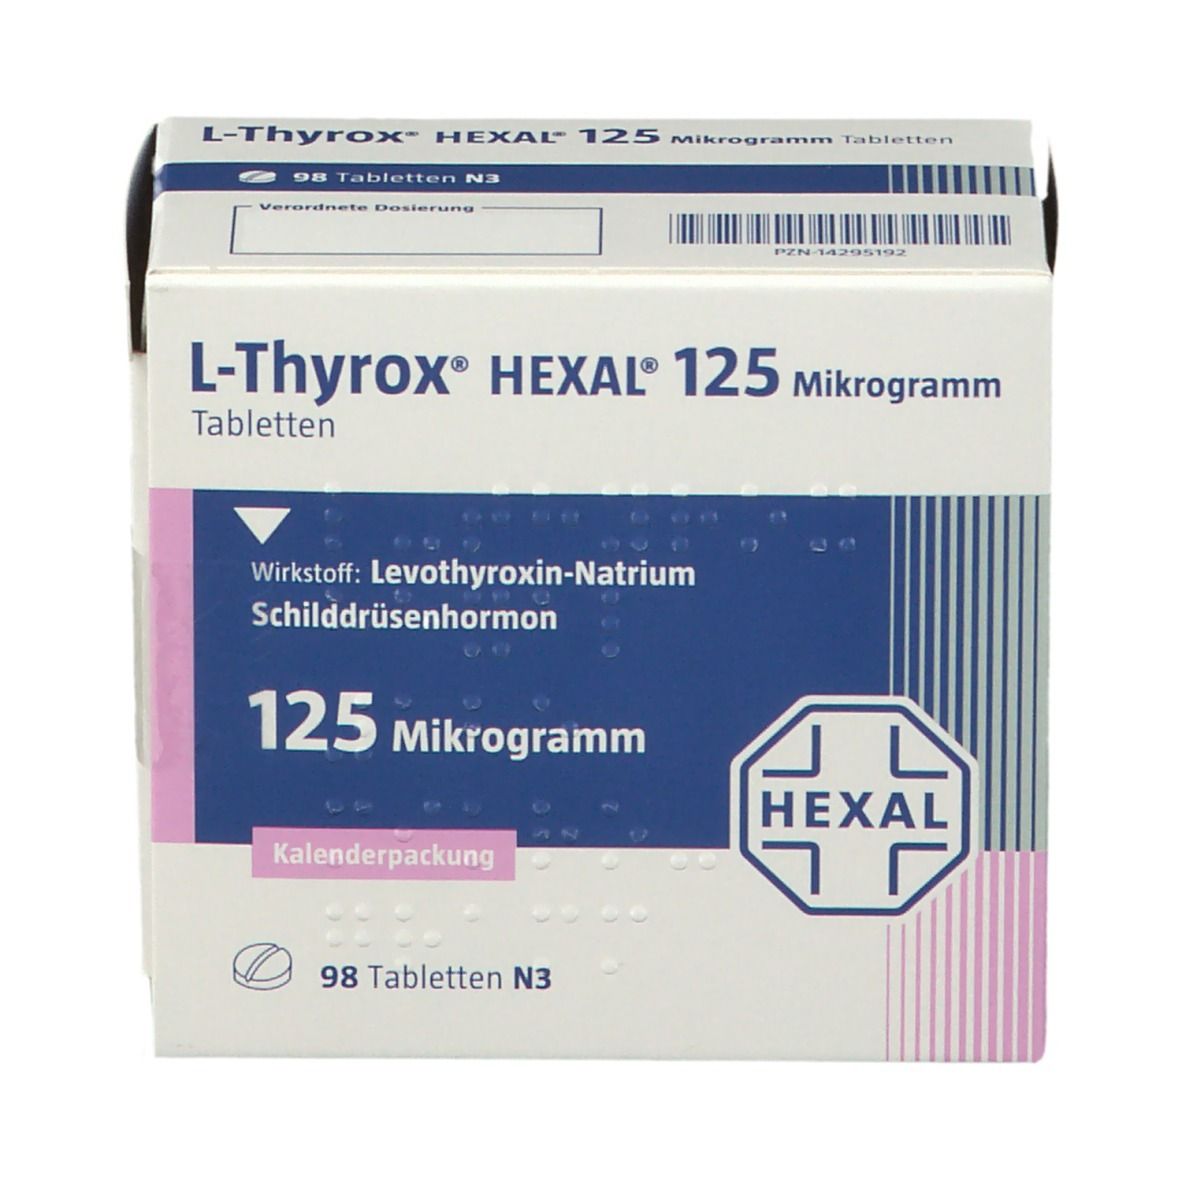 L-Thyrox® HEXAL® 125